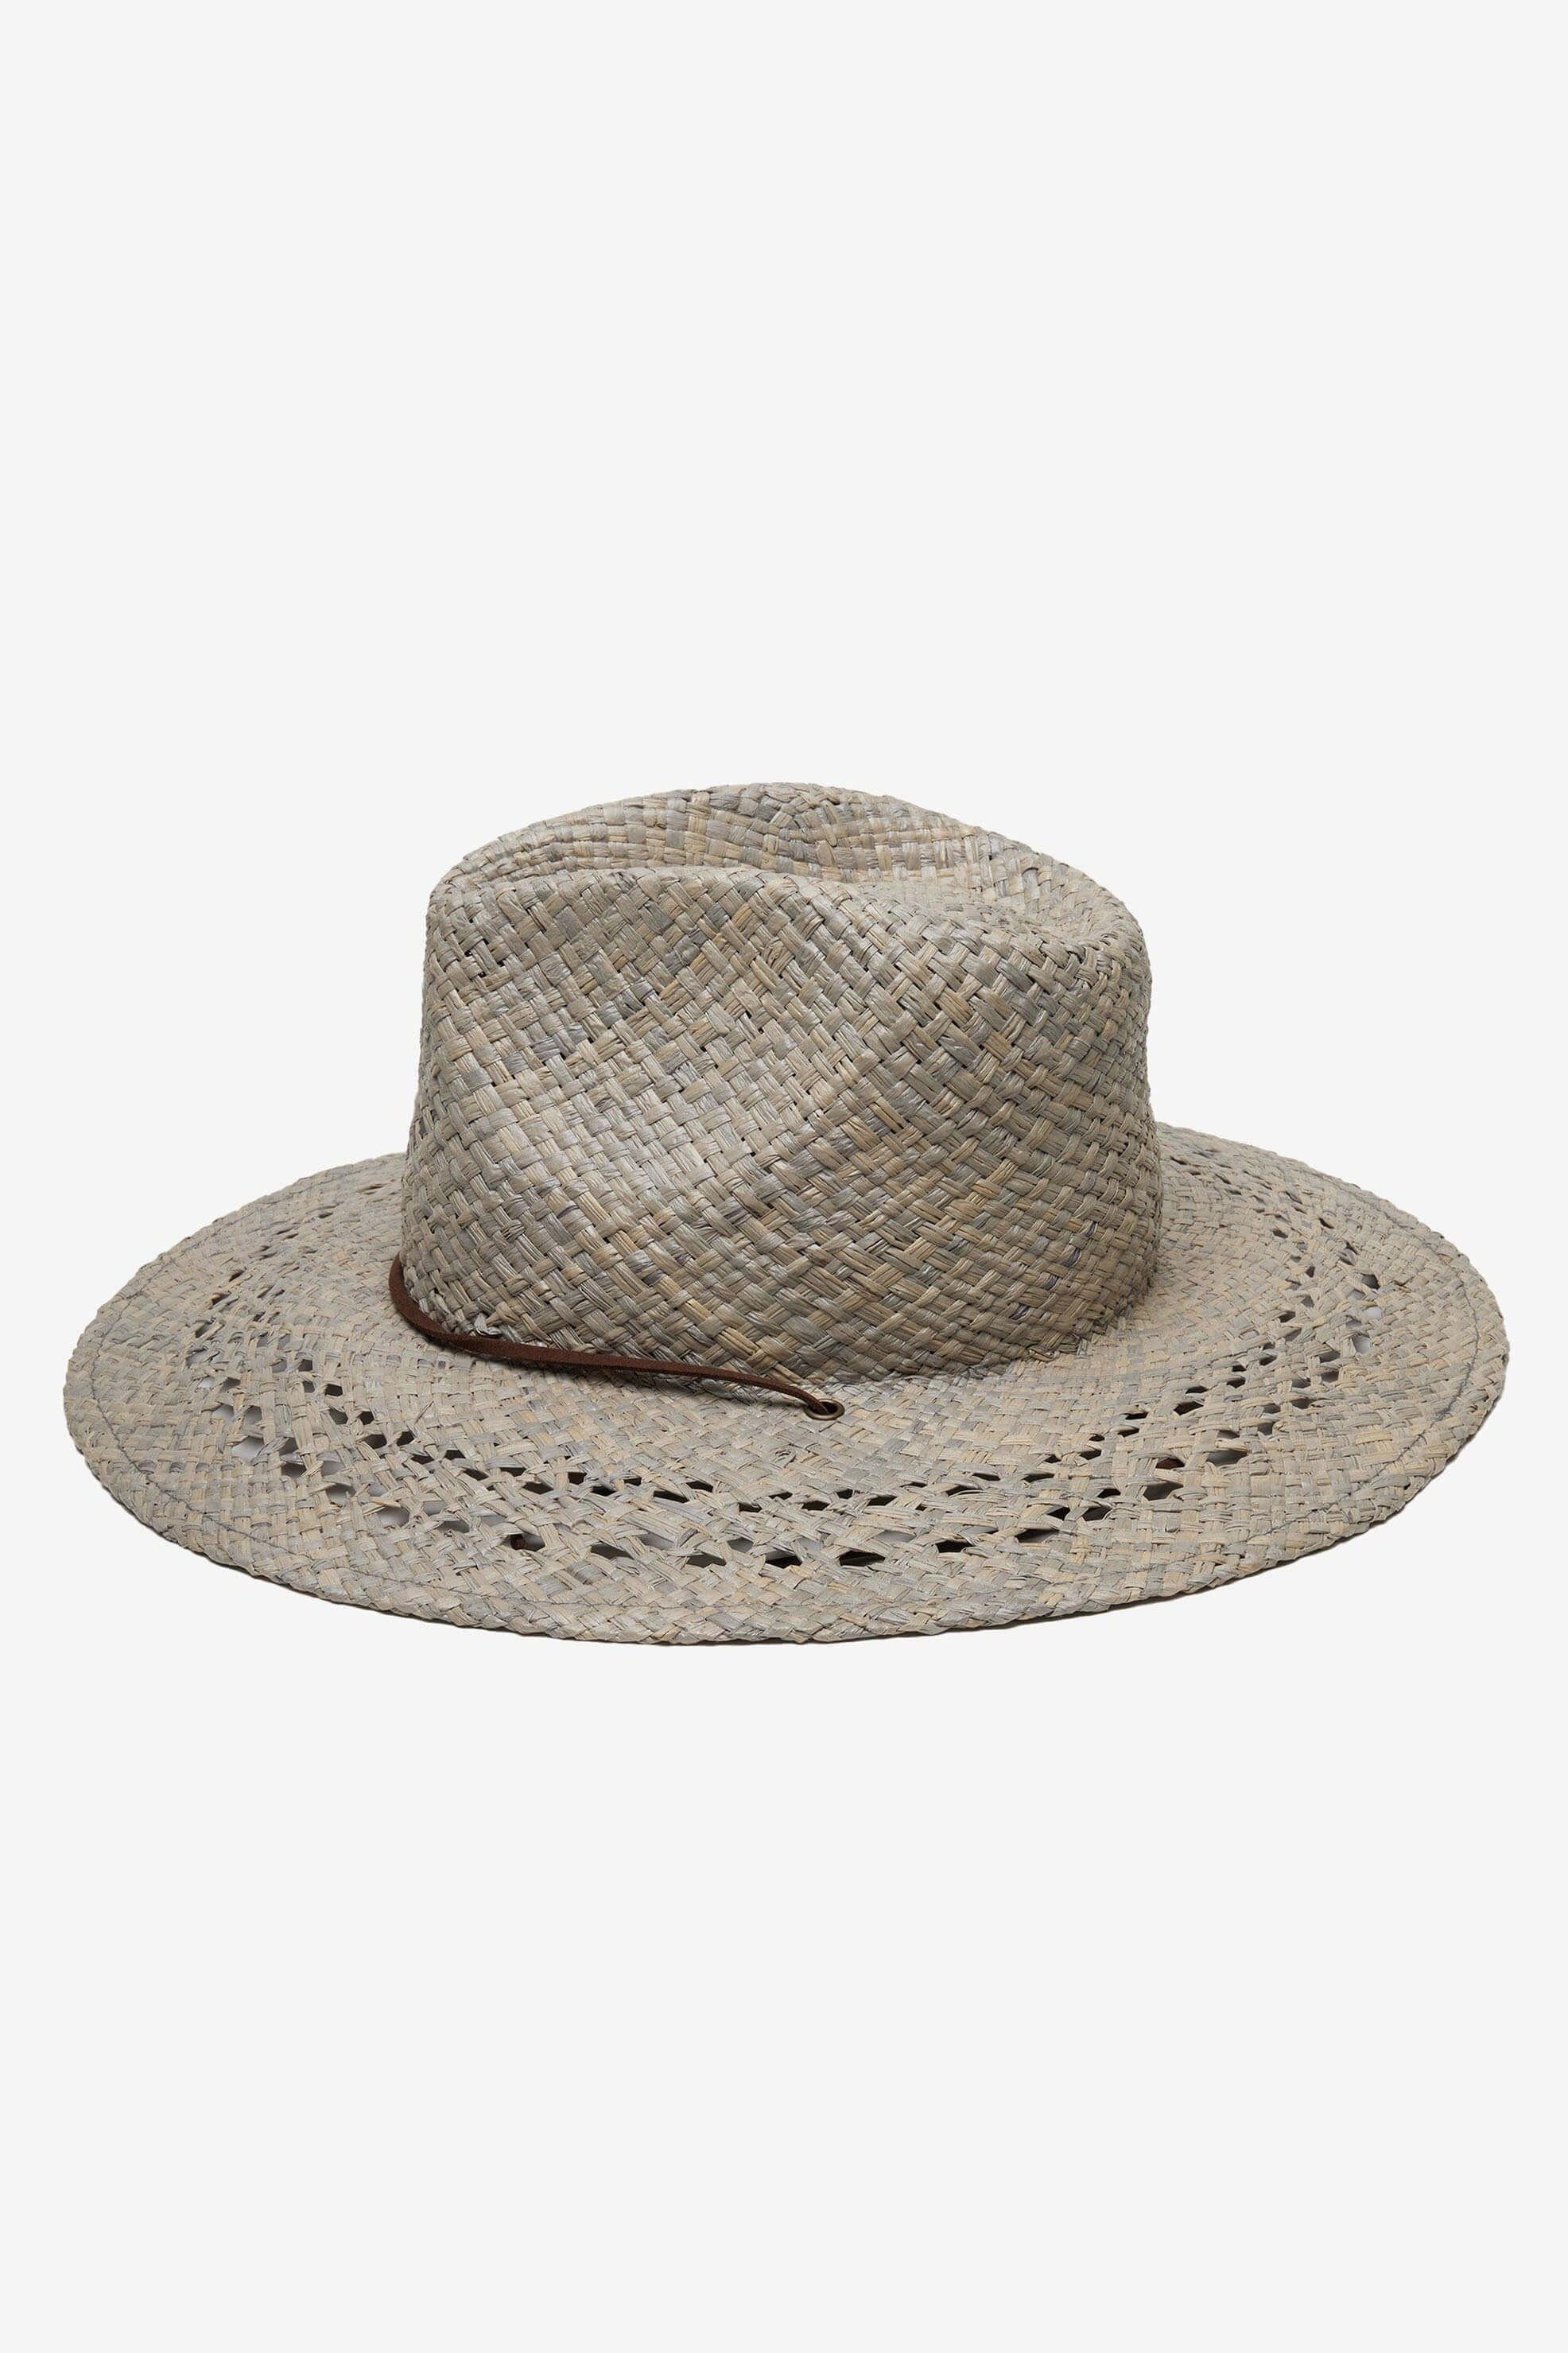 Wyeth hamilton hat in grey